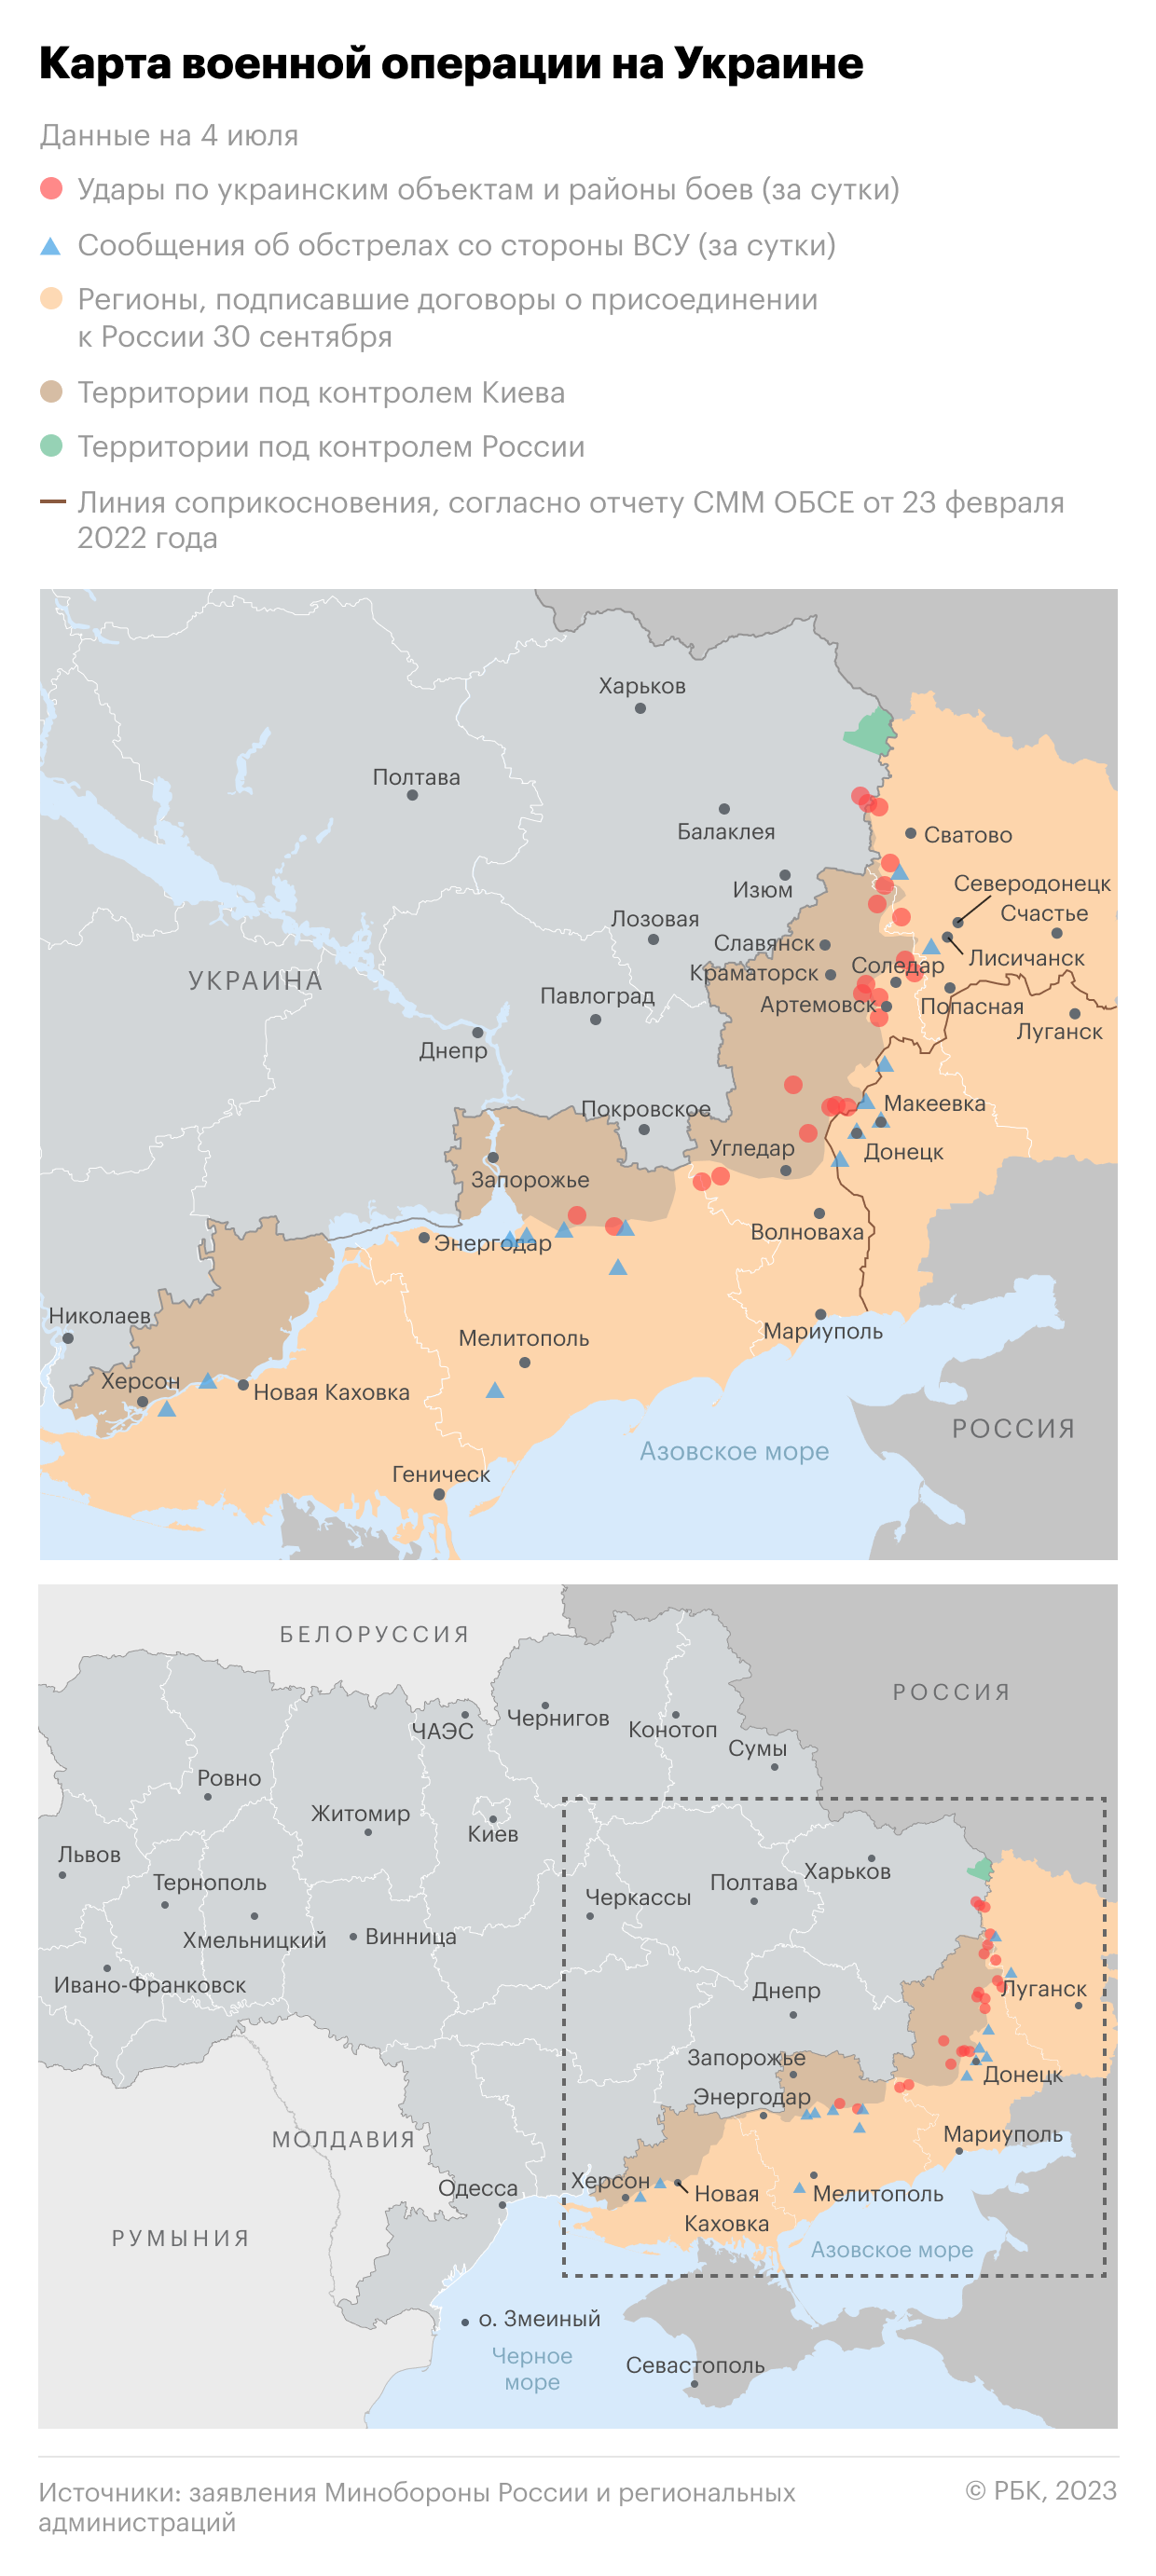 Военная операция на Украине. Карта на 4 июля"/>













